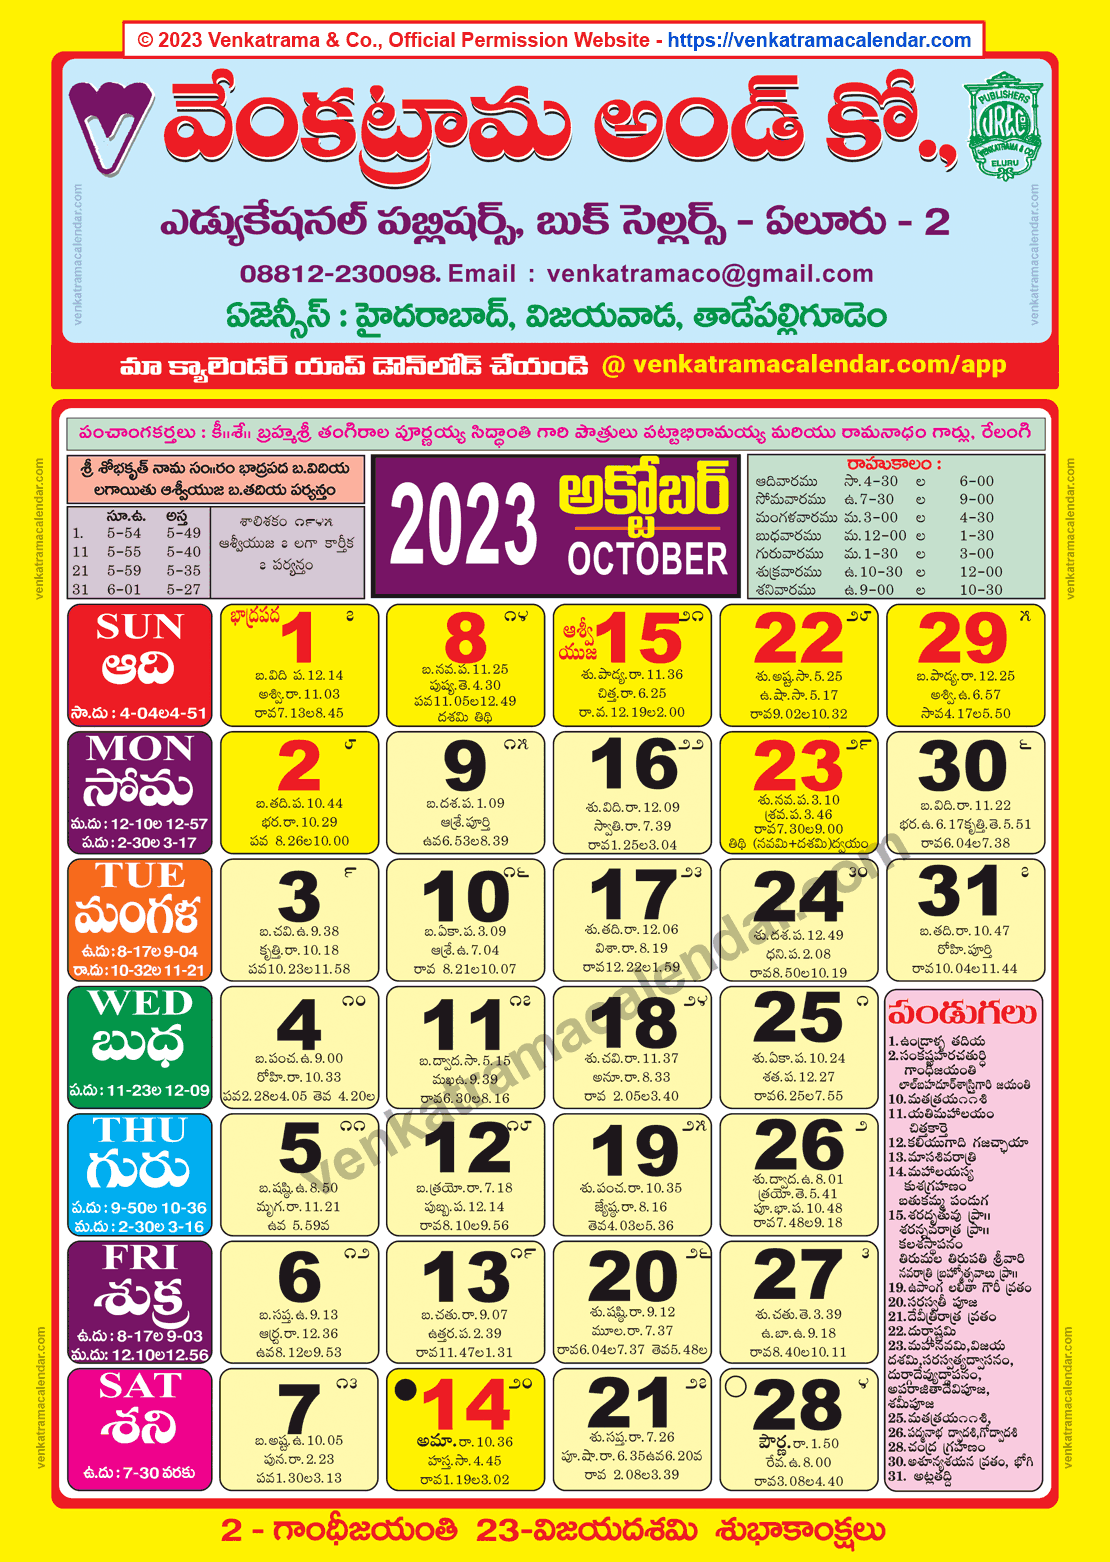 Venkatrama Calendar 2023 October